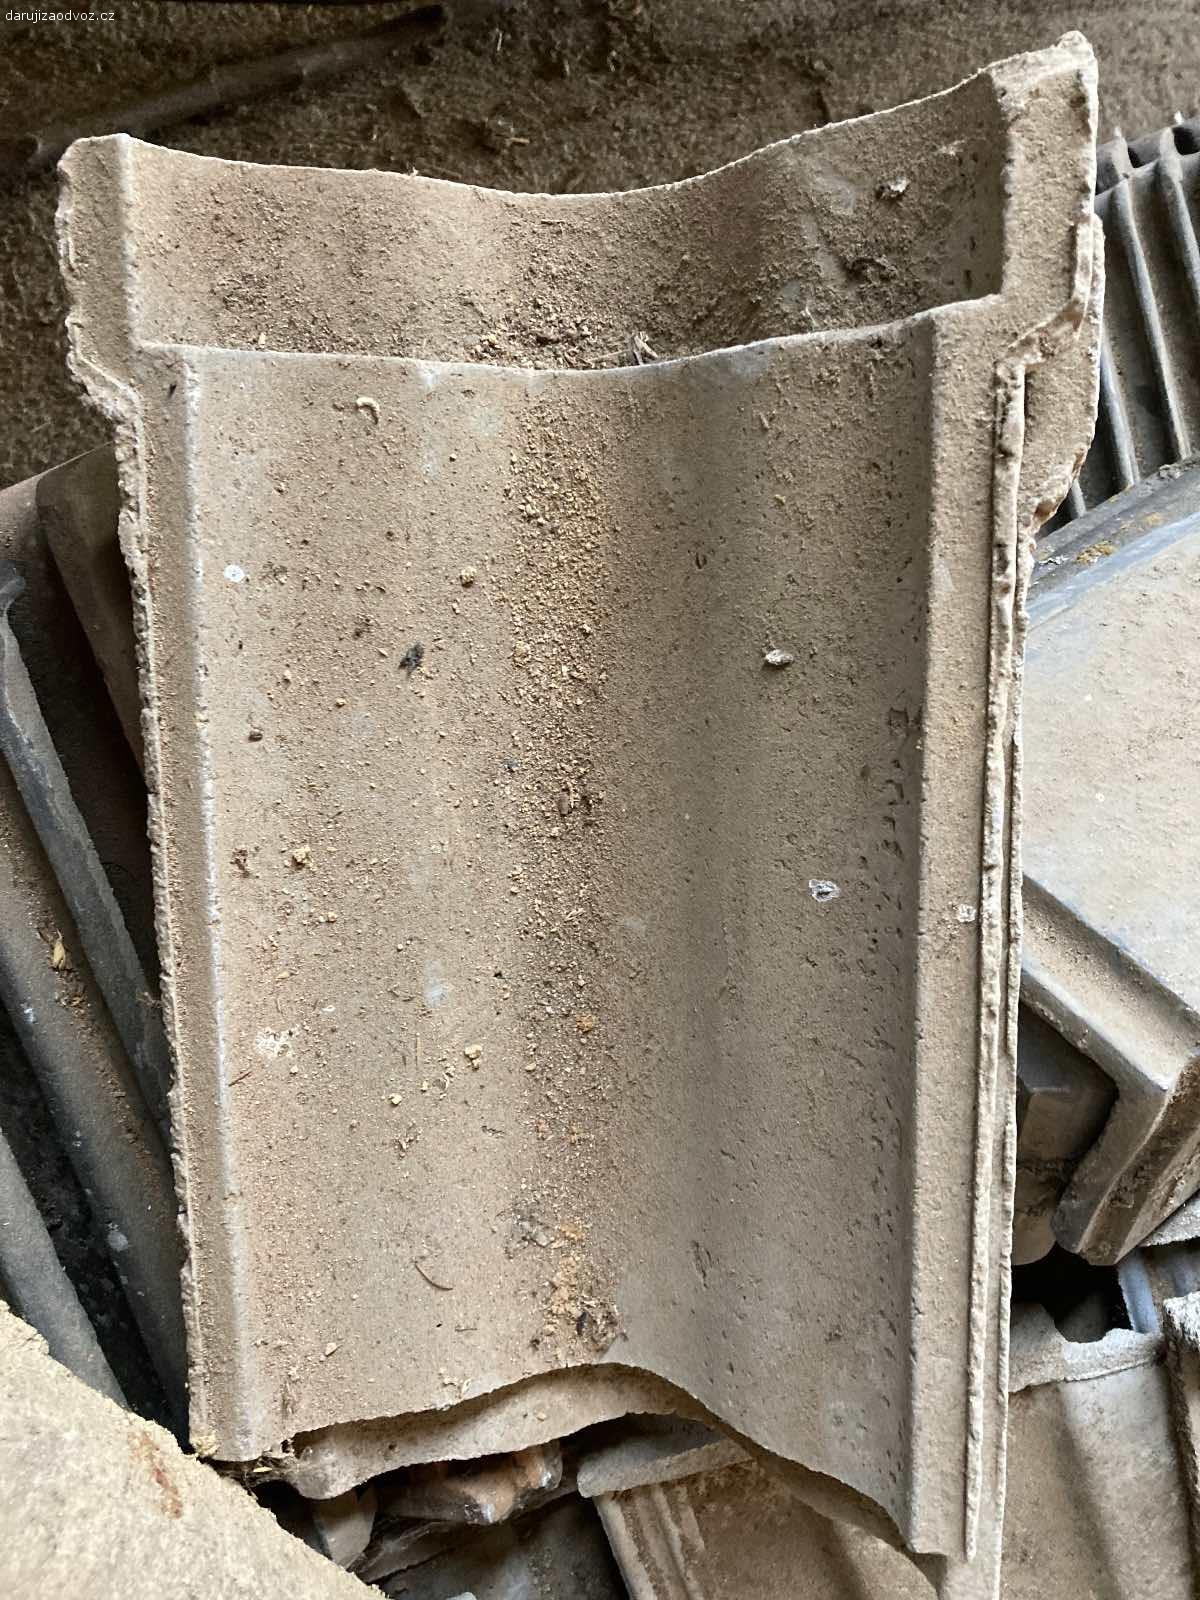 Střešní taška betonová. ~126 ks betonová taška

2 ks hřebenáč